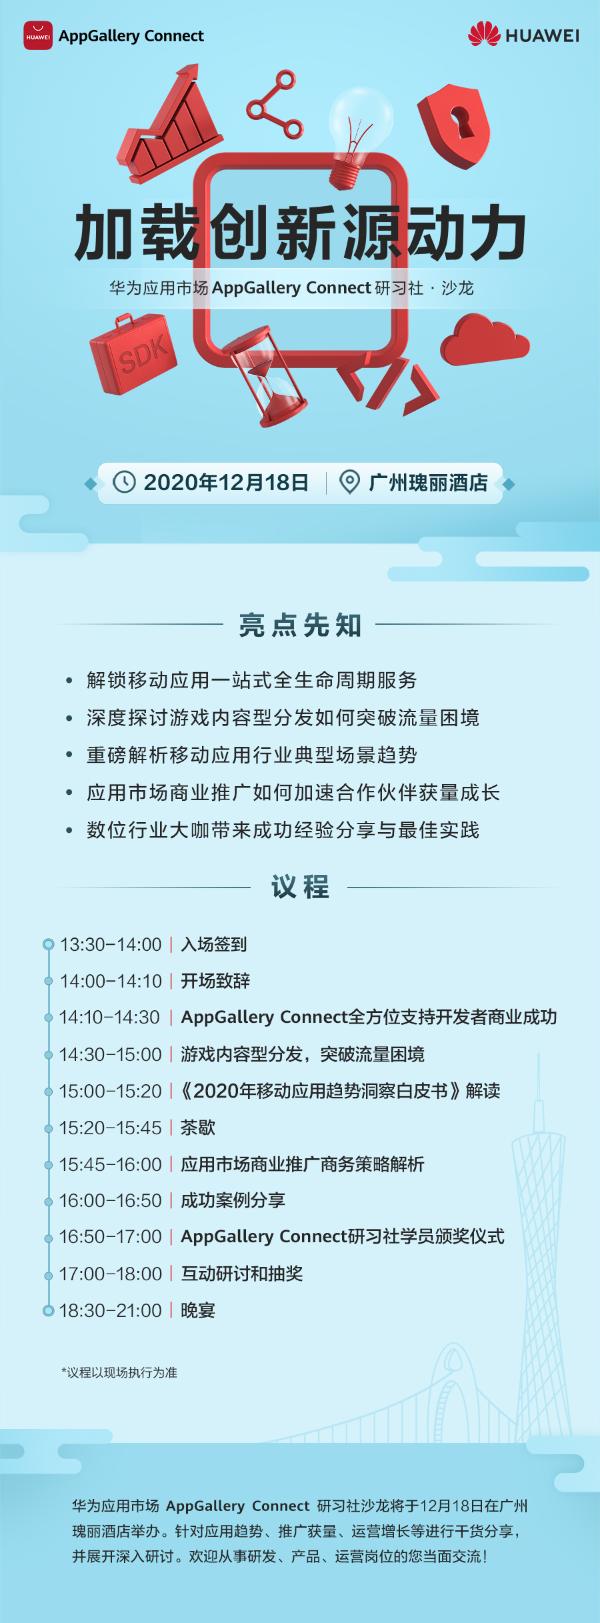 华为应用市场AppGallery Connect研习社·沙龙广州站即将举办